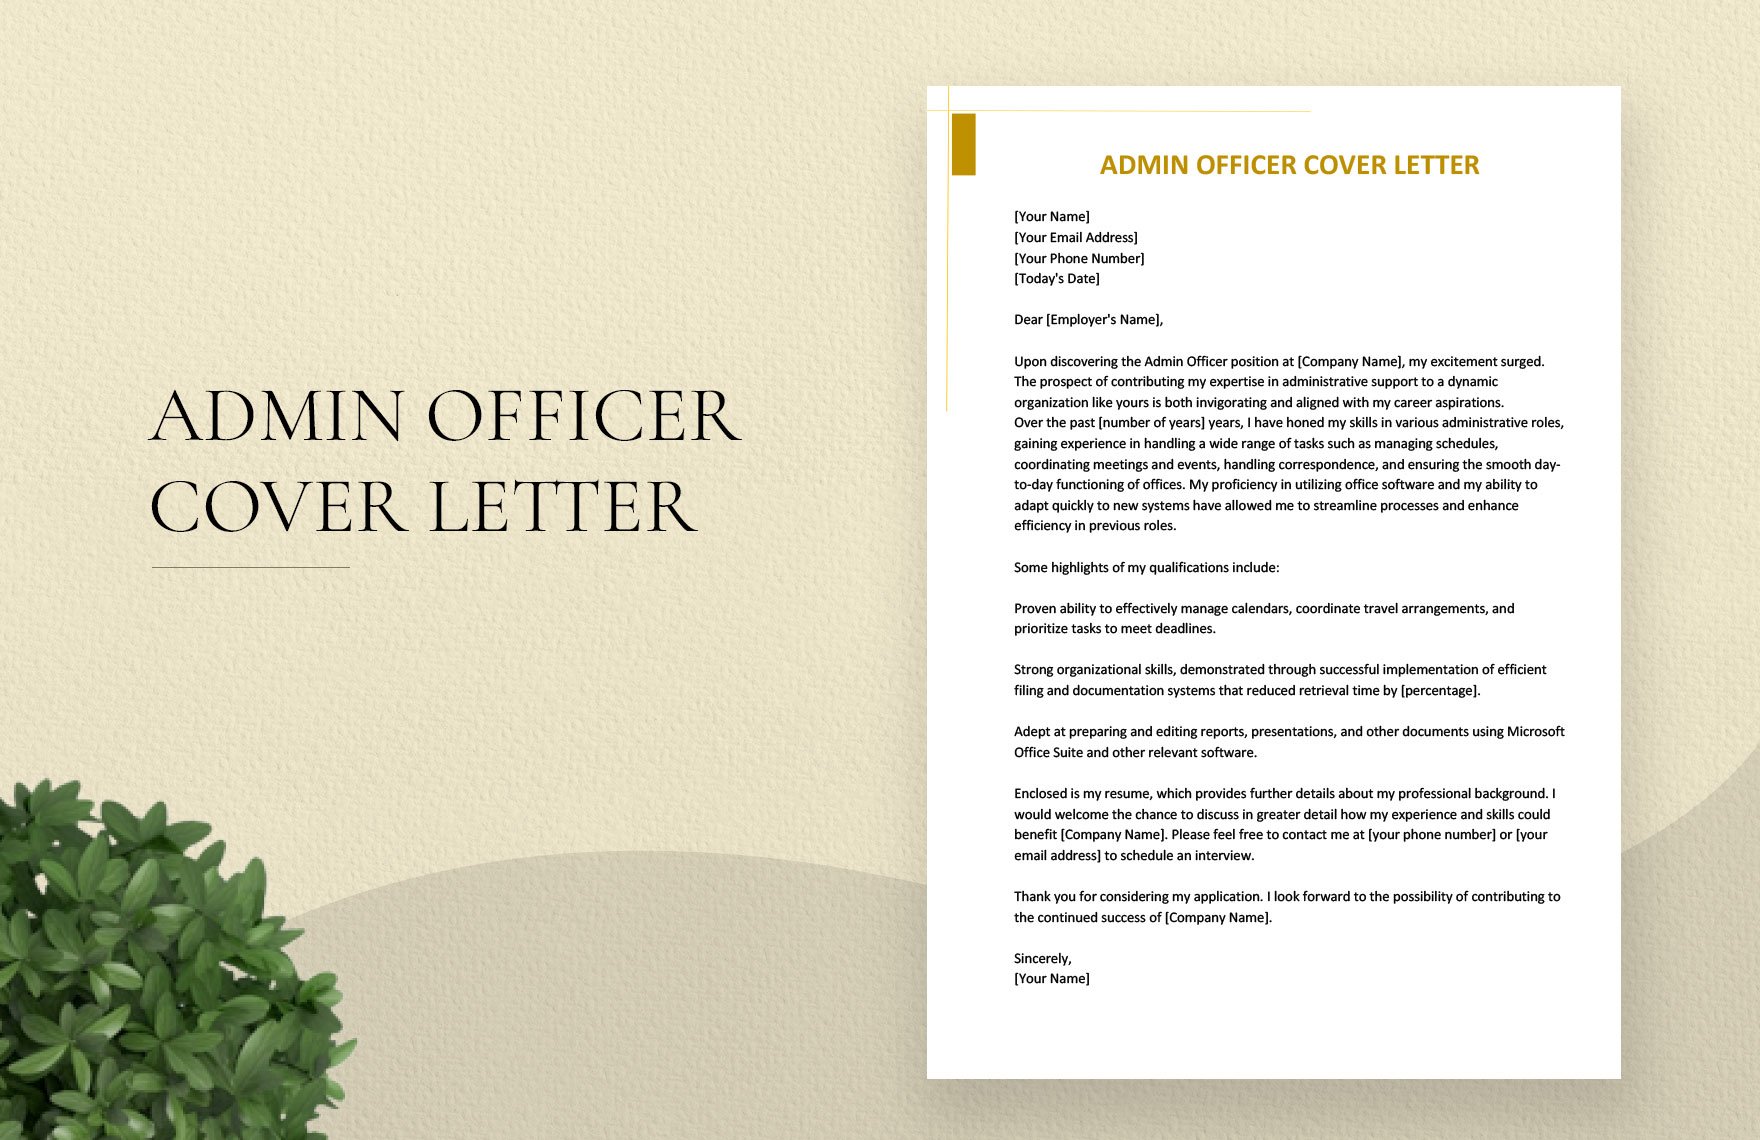 Admin Officer Cover Letter